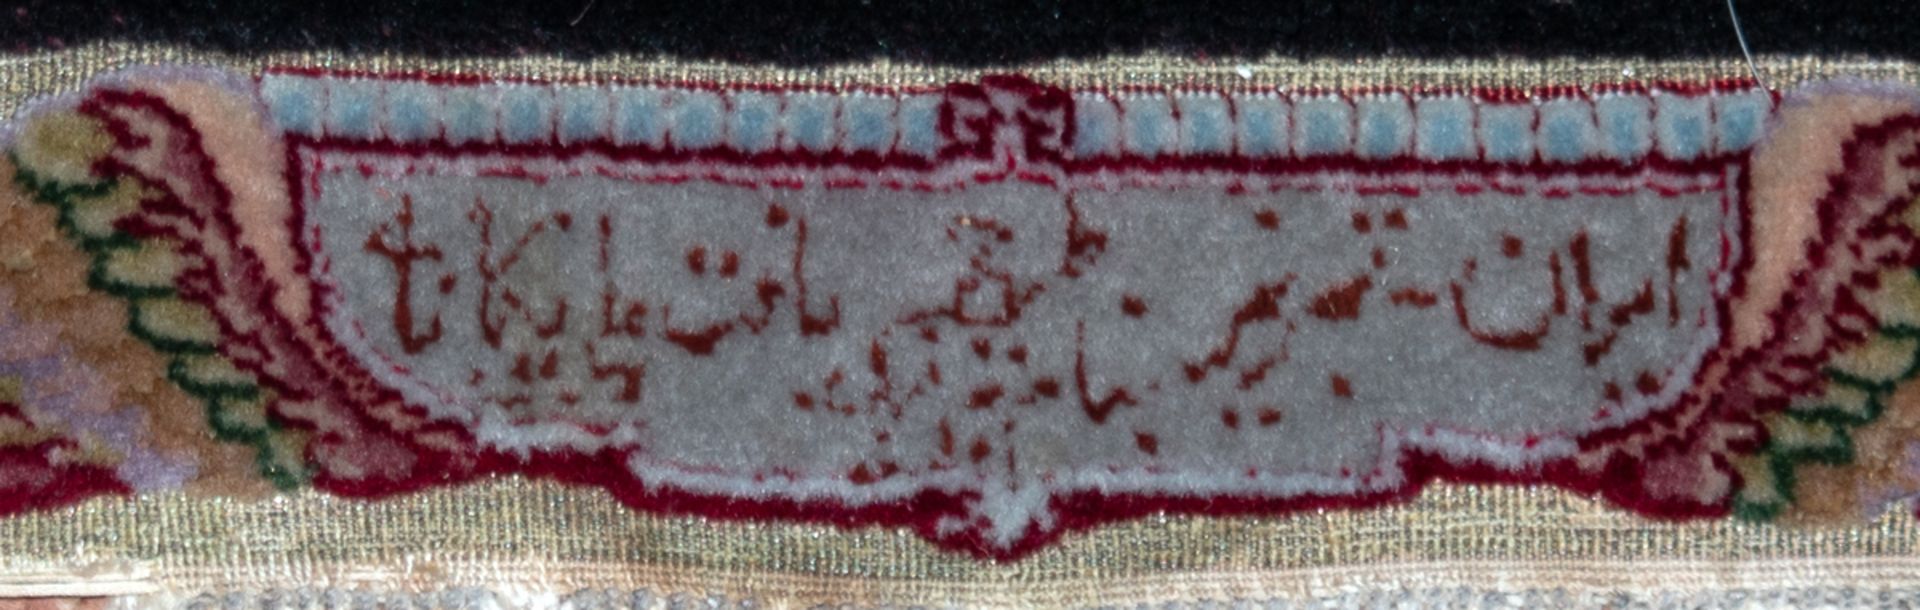 Täbris, Persien, signiert, Korkwolle mit Seide, auf Seide, goldbroschiert, schwarz gerahmtes Medail - Image 2 of 2